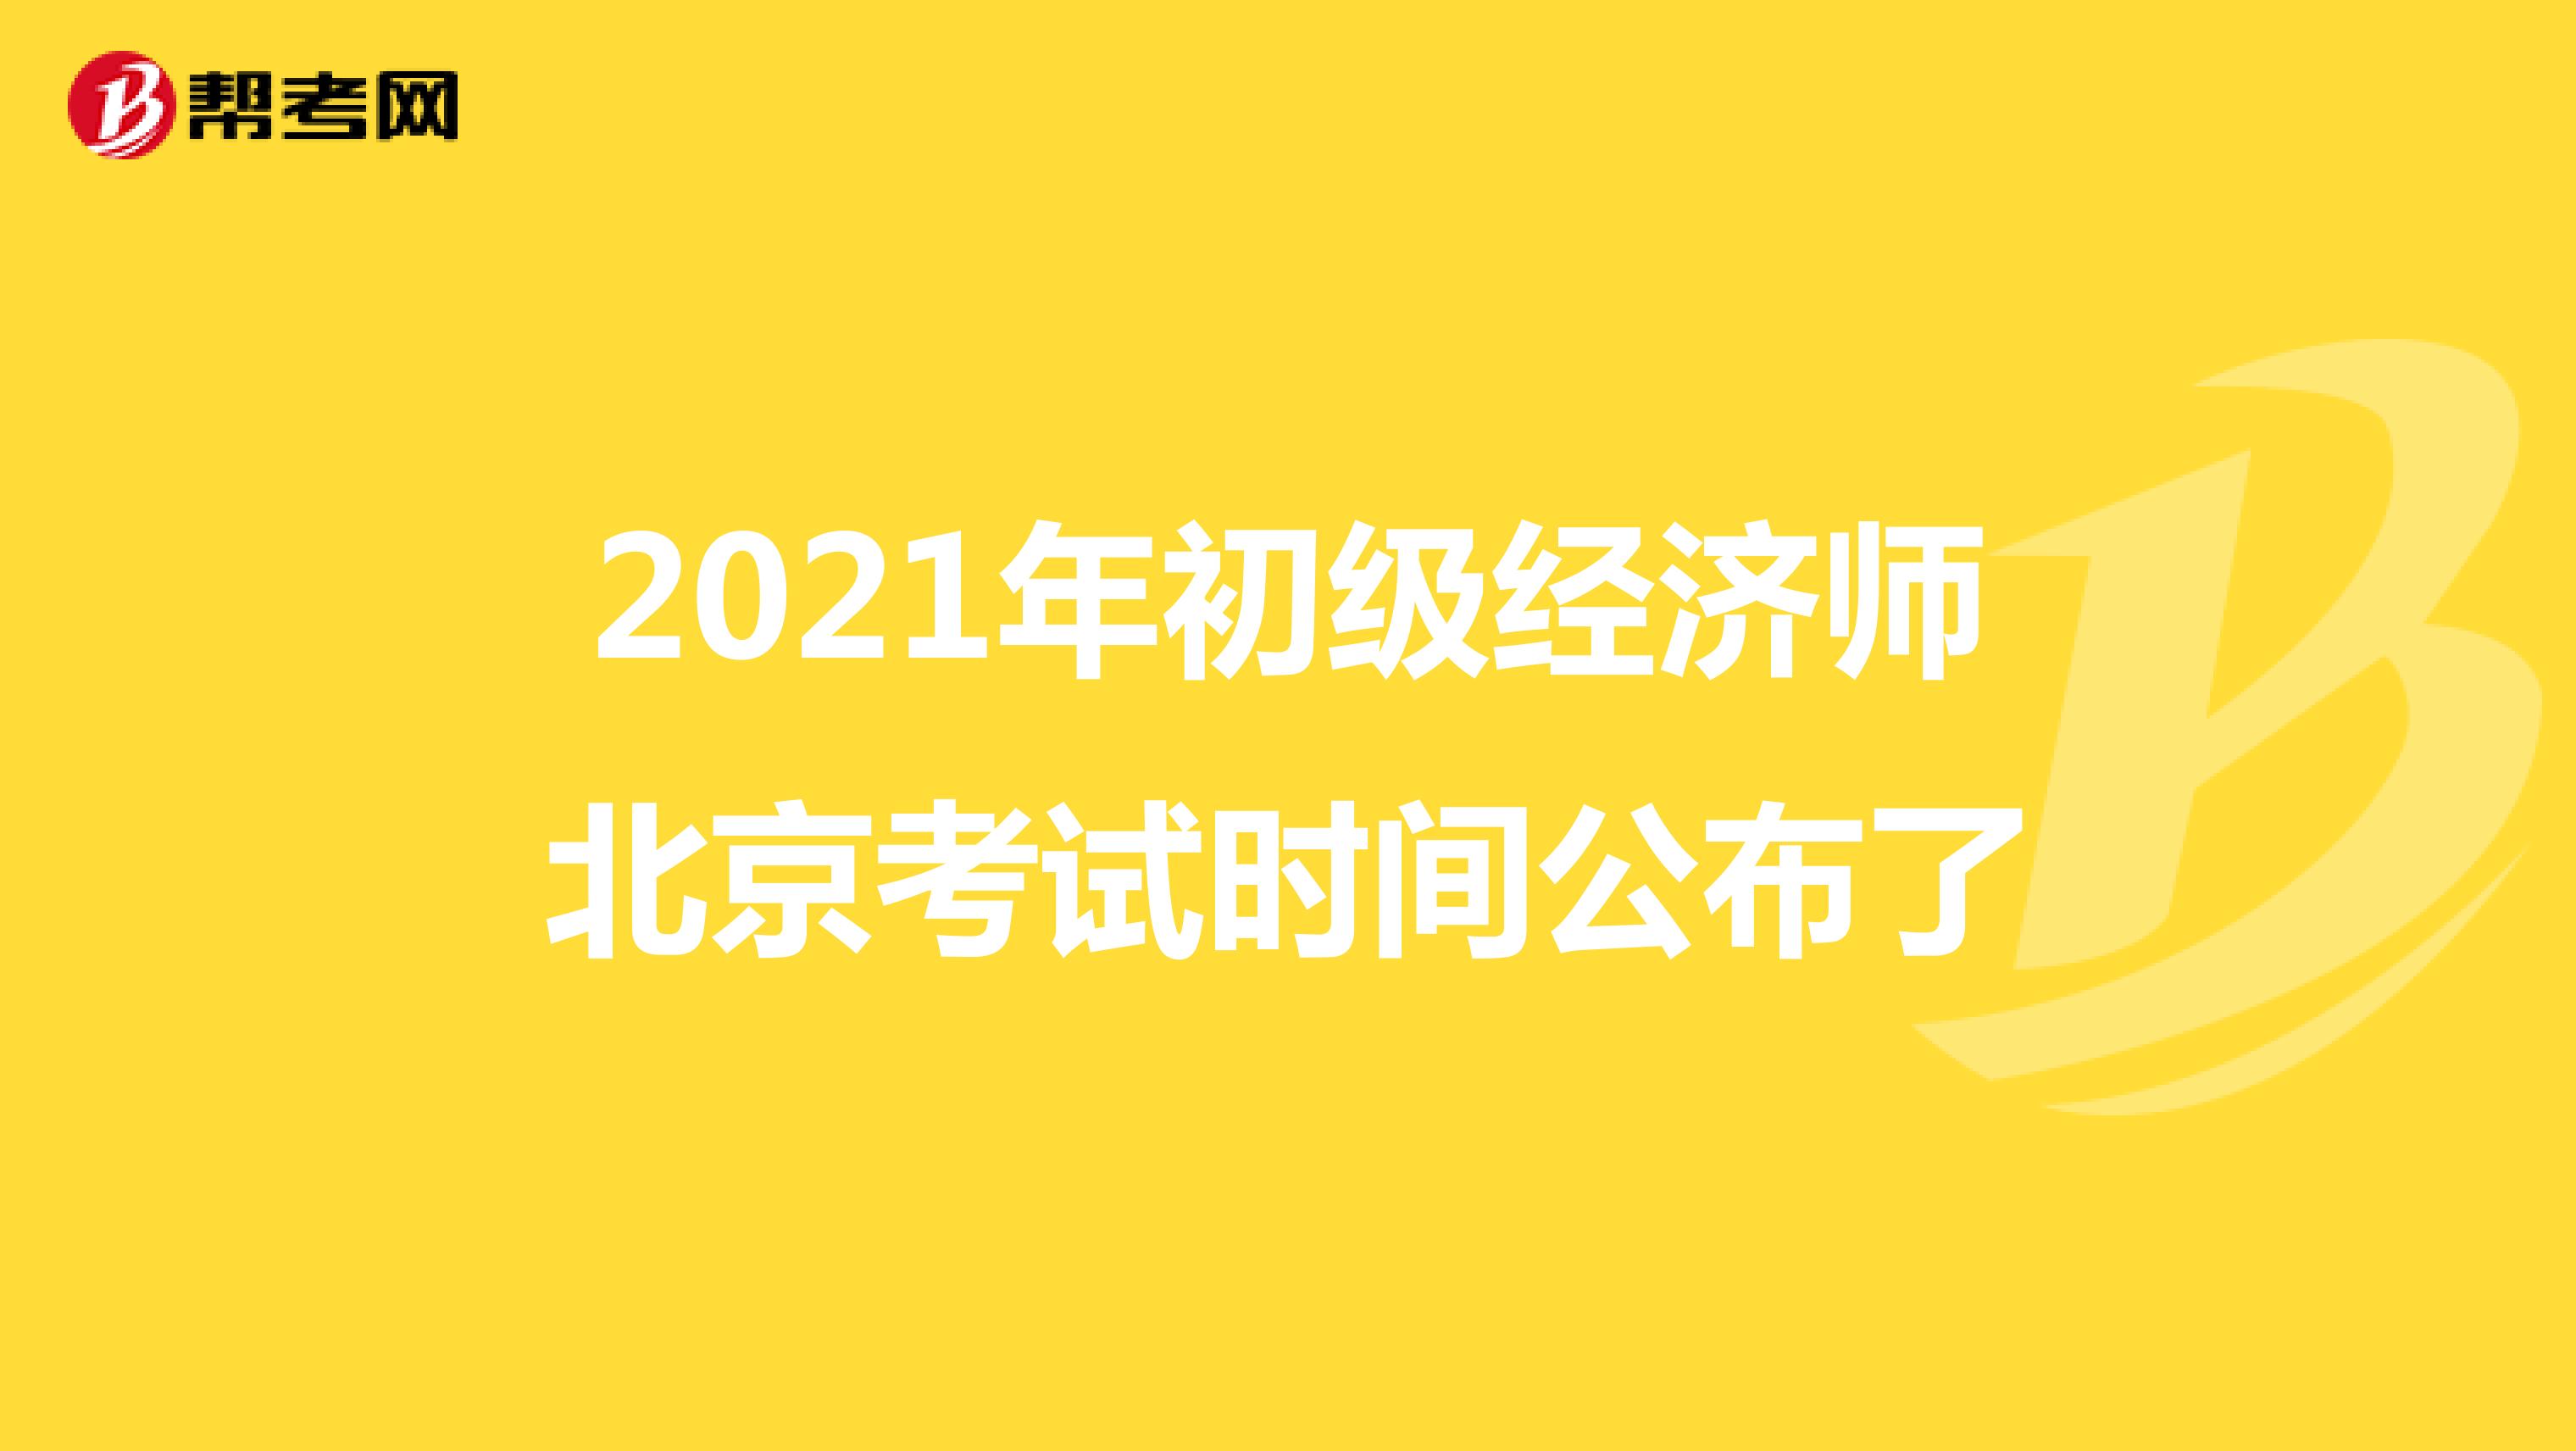 2021年初级经济师北京考试时间公布了